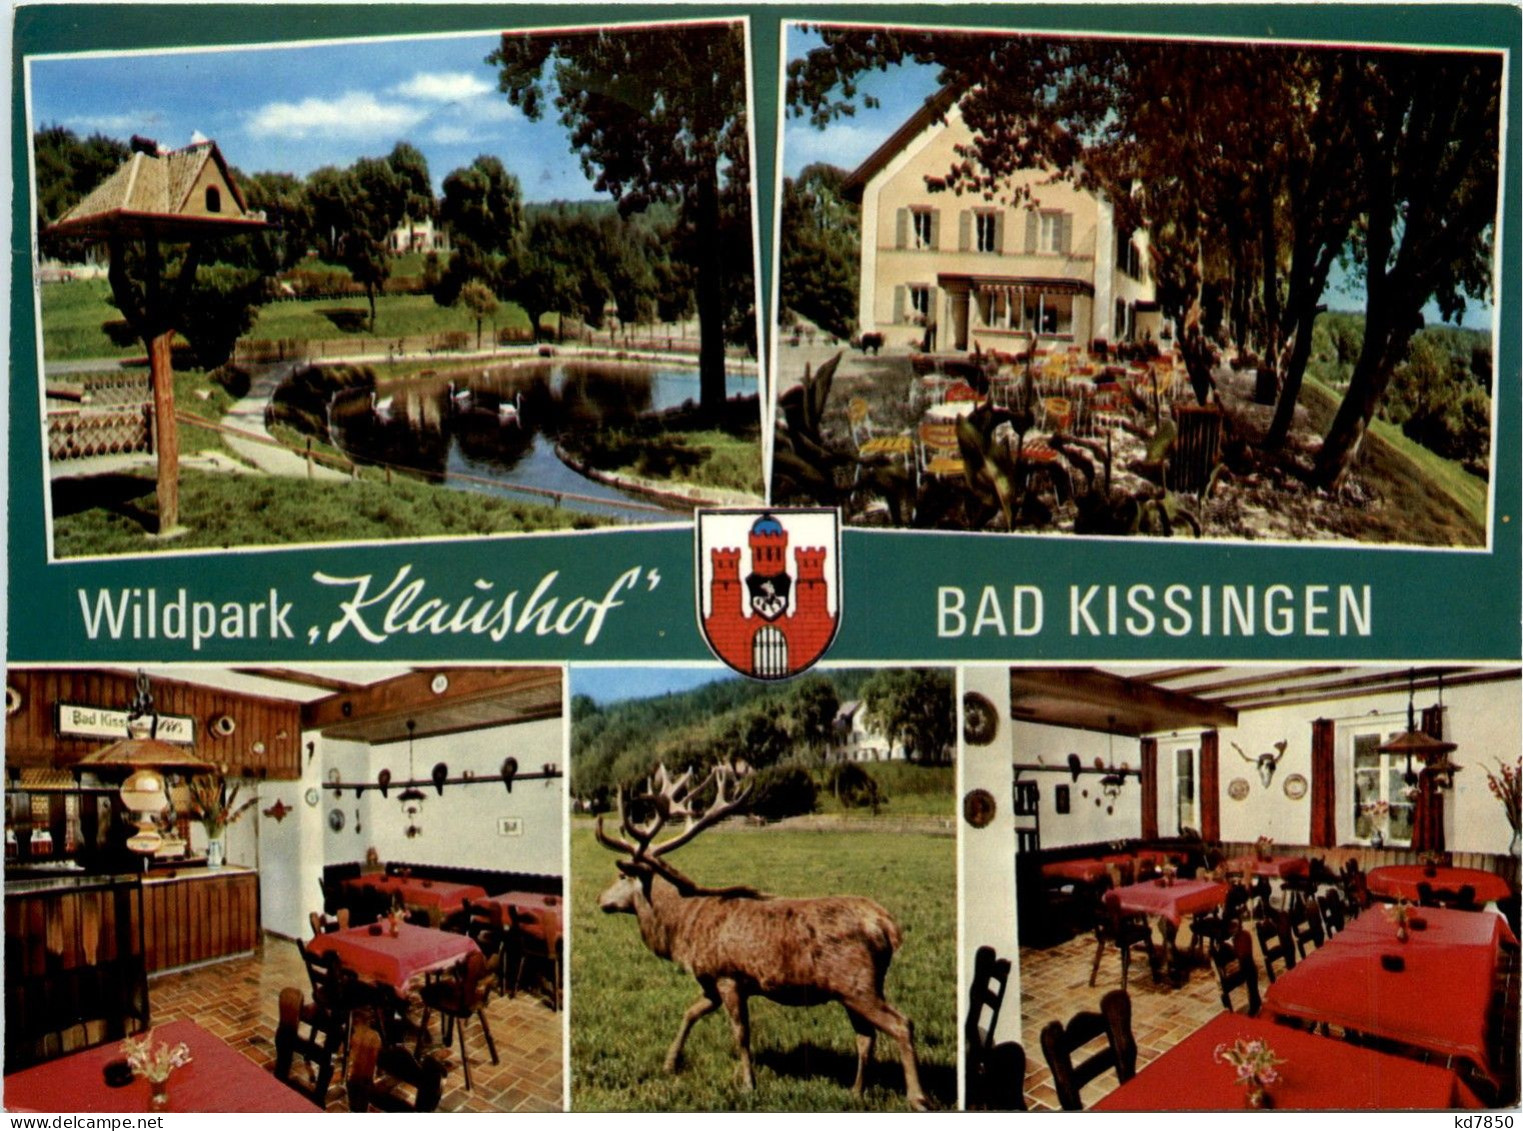 Bad Kissingen - Wildpark Klaushof - Bad Kissingen